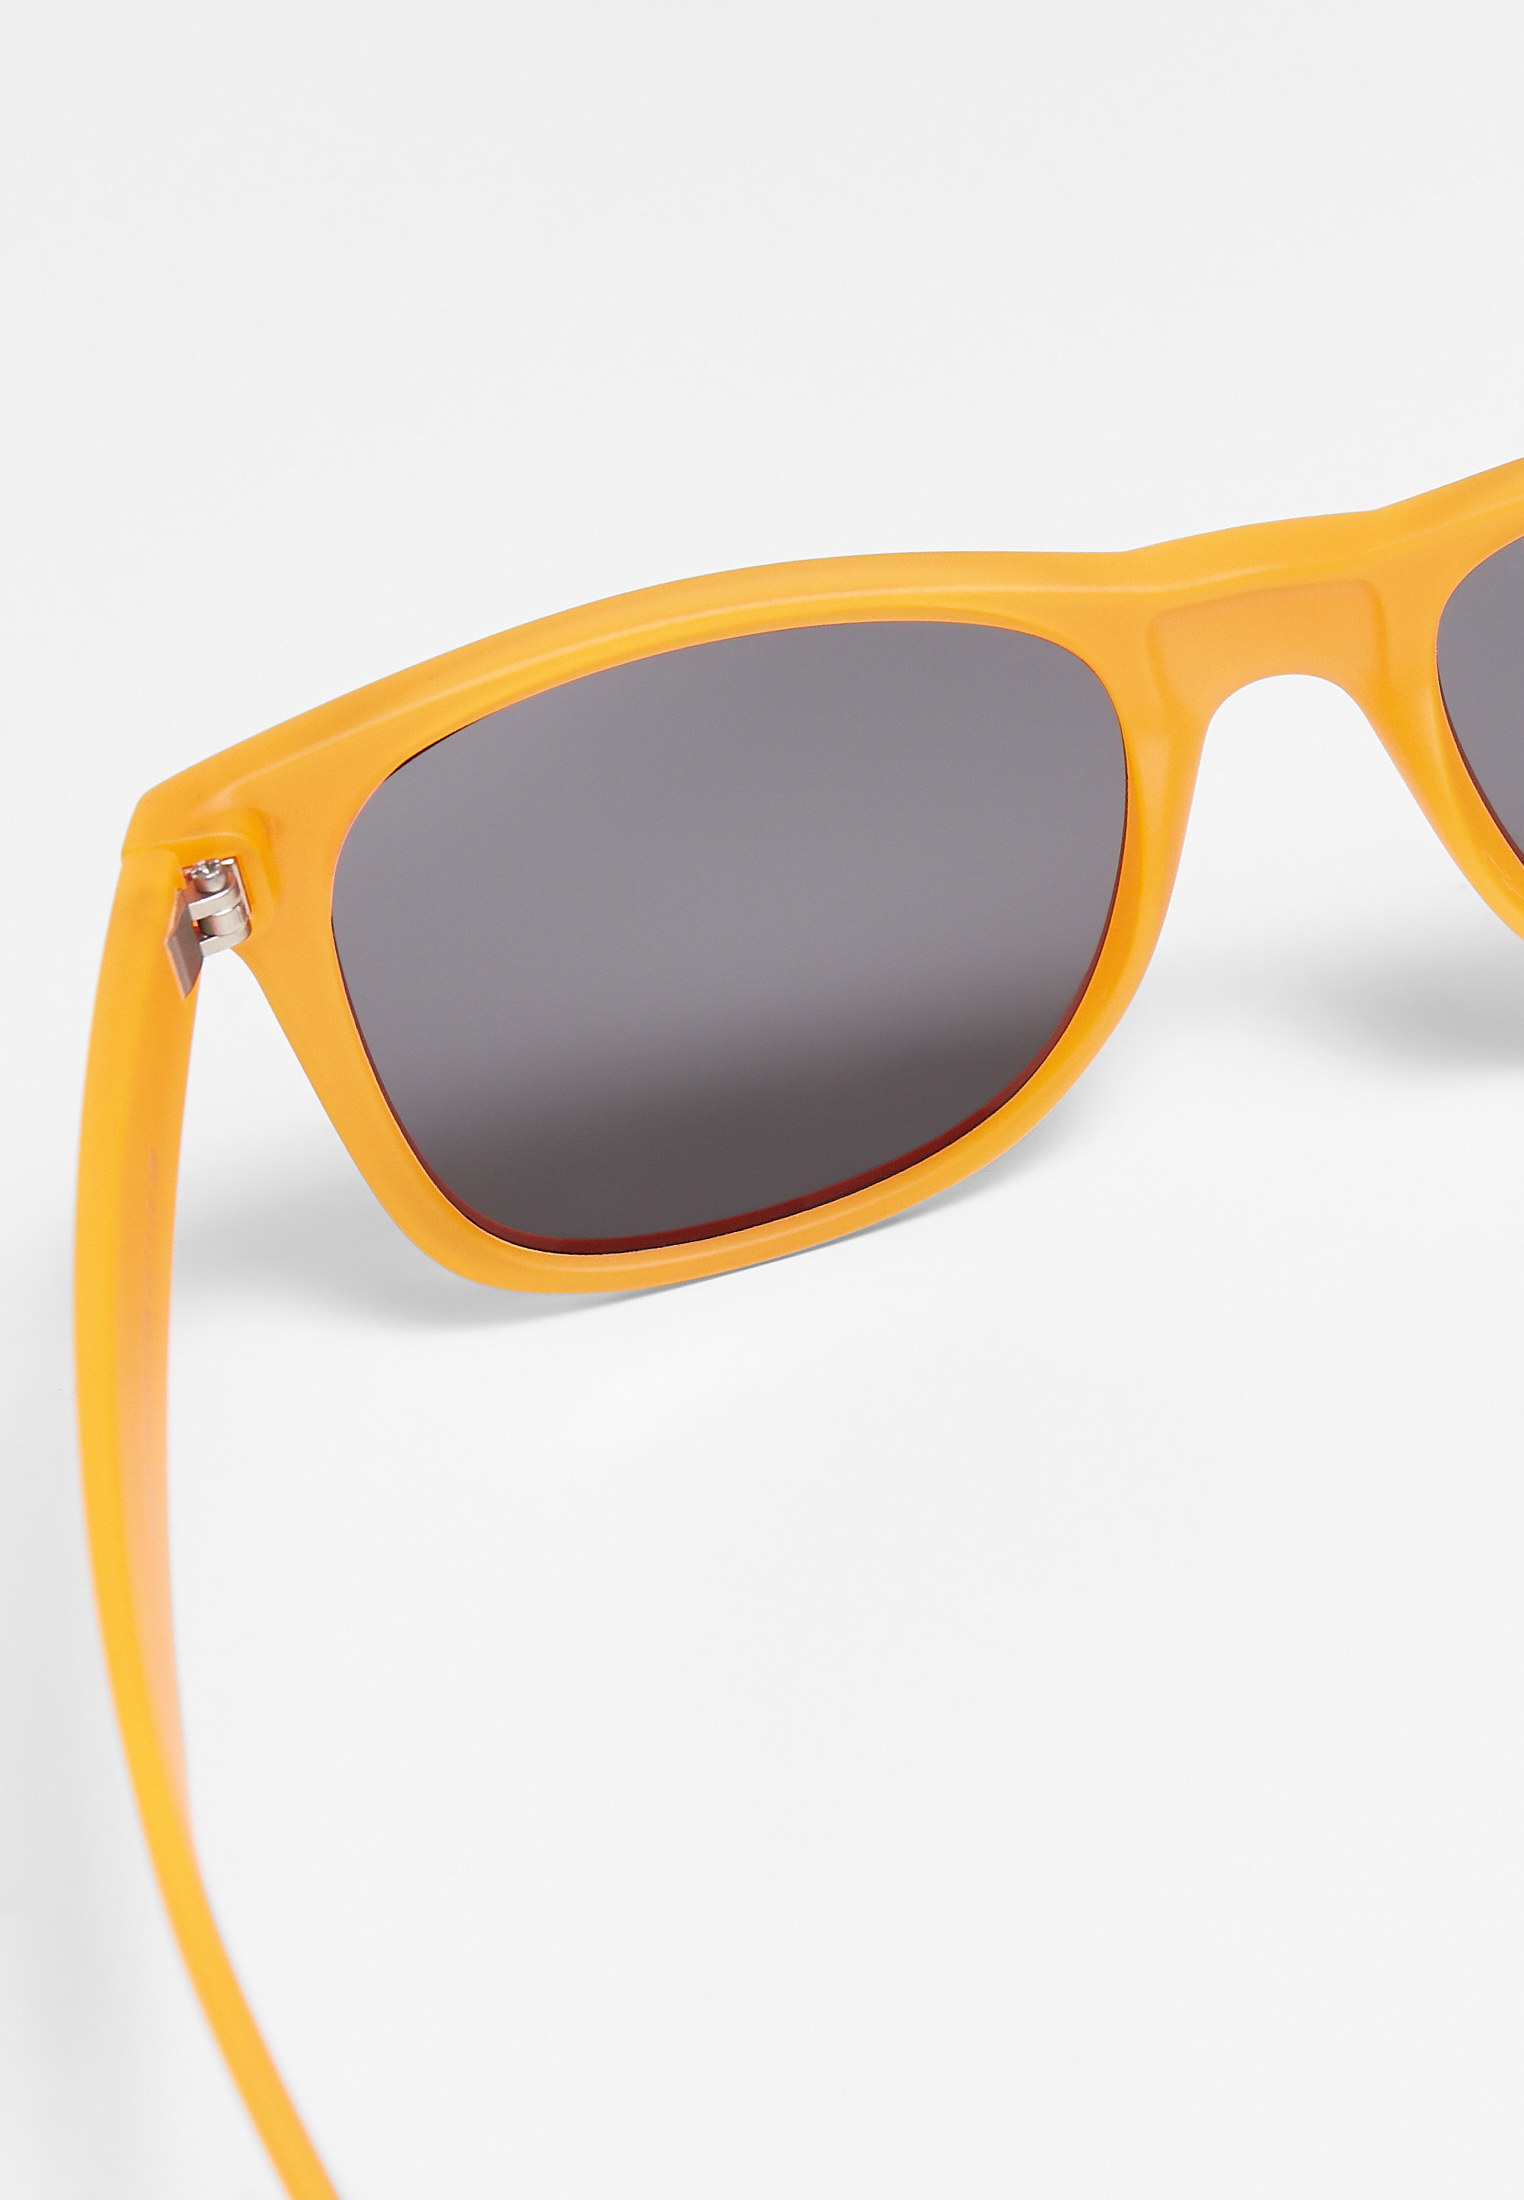 Sonnenbrillen Sunglasses Likoma UC in Farbe neonorange